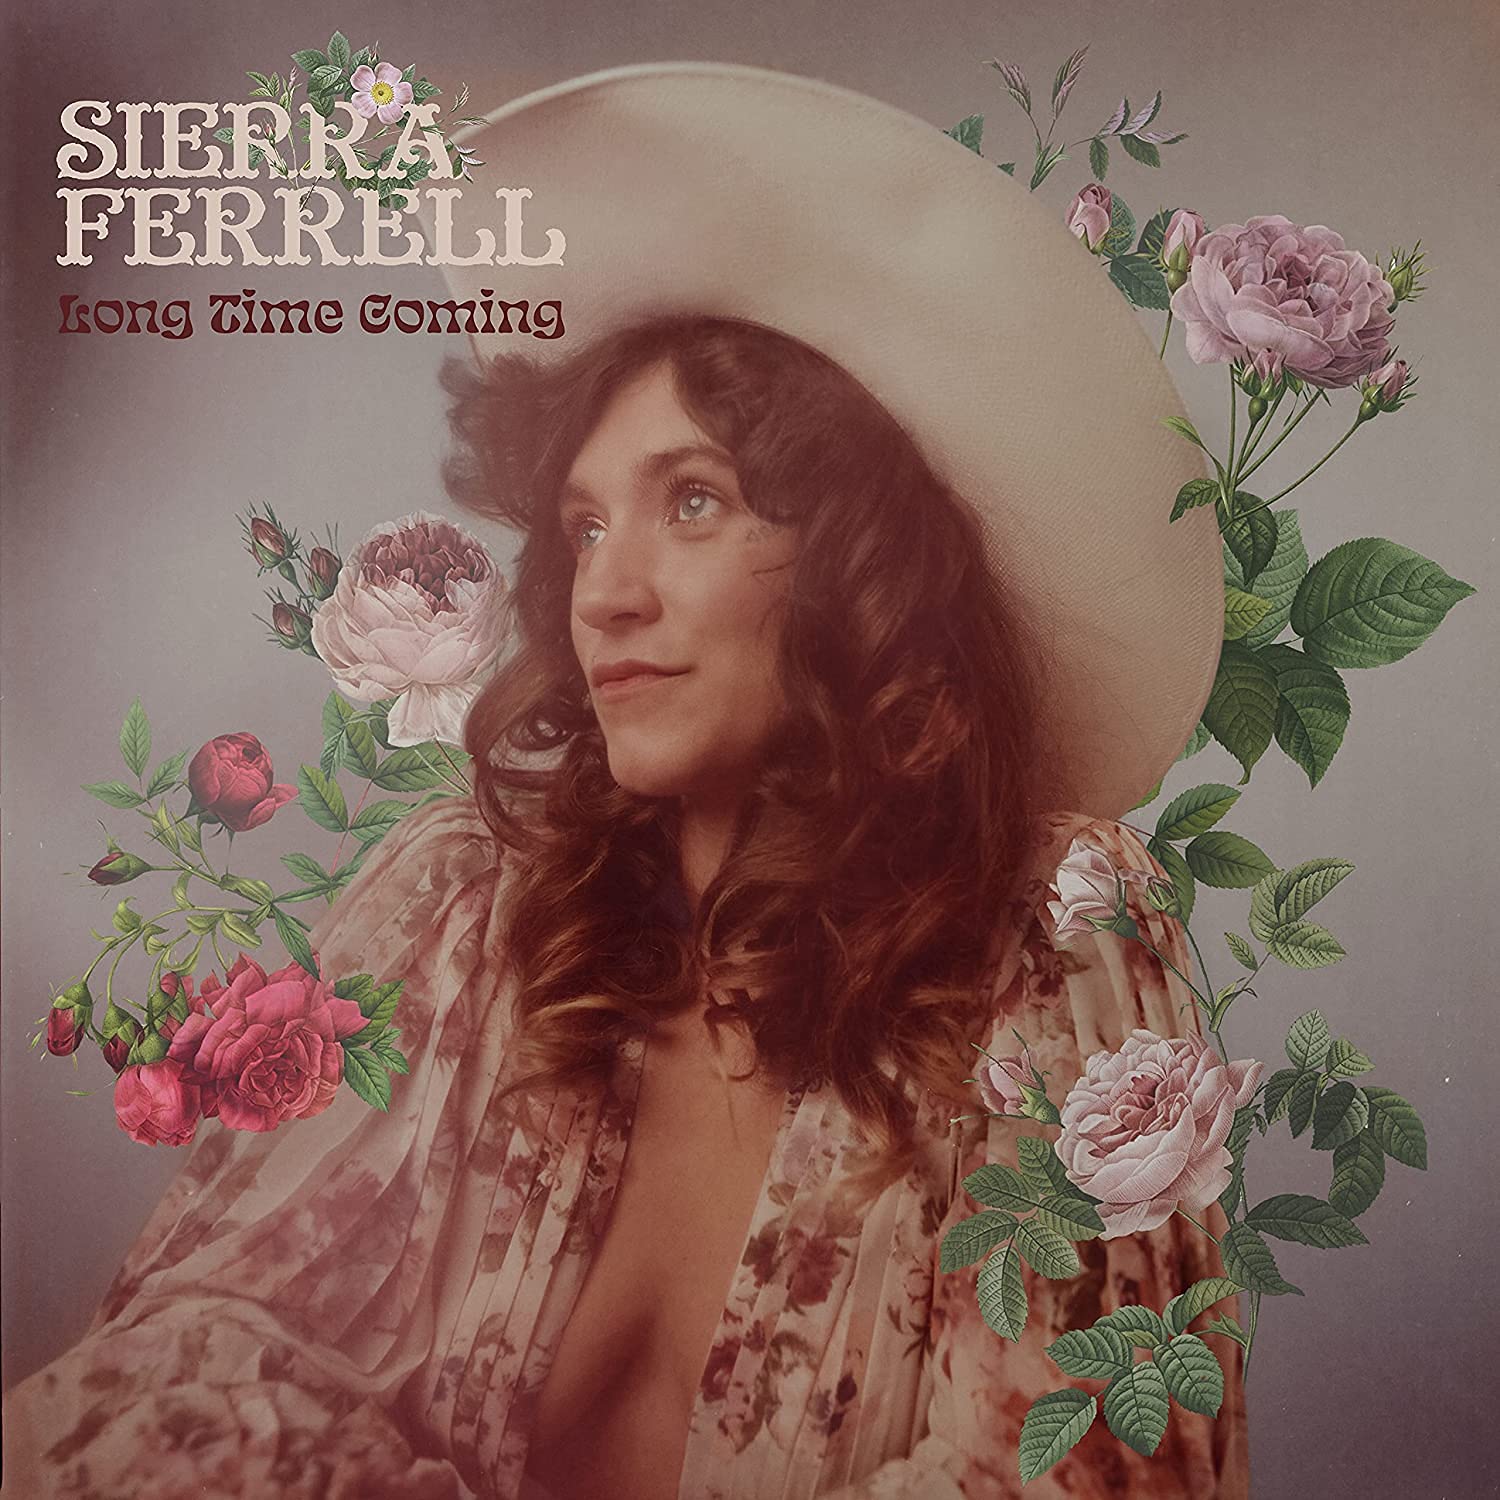 Vinile Sierra Ferrell - Long Time Coming NUOVO SIGILLATO, EDIZIONE DEL 20/08/2021 SUBITO DISPONIBILE